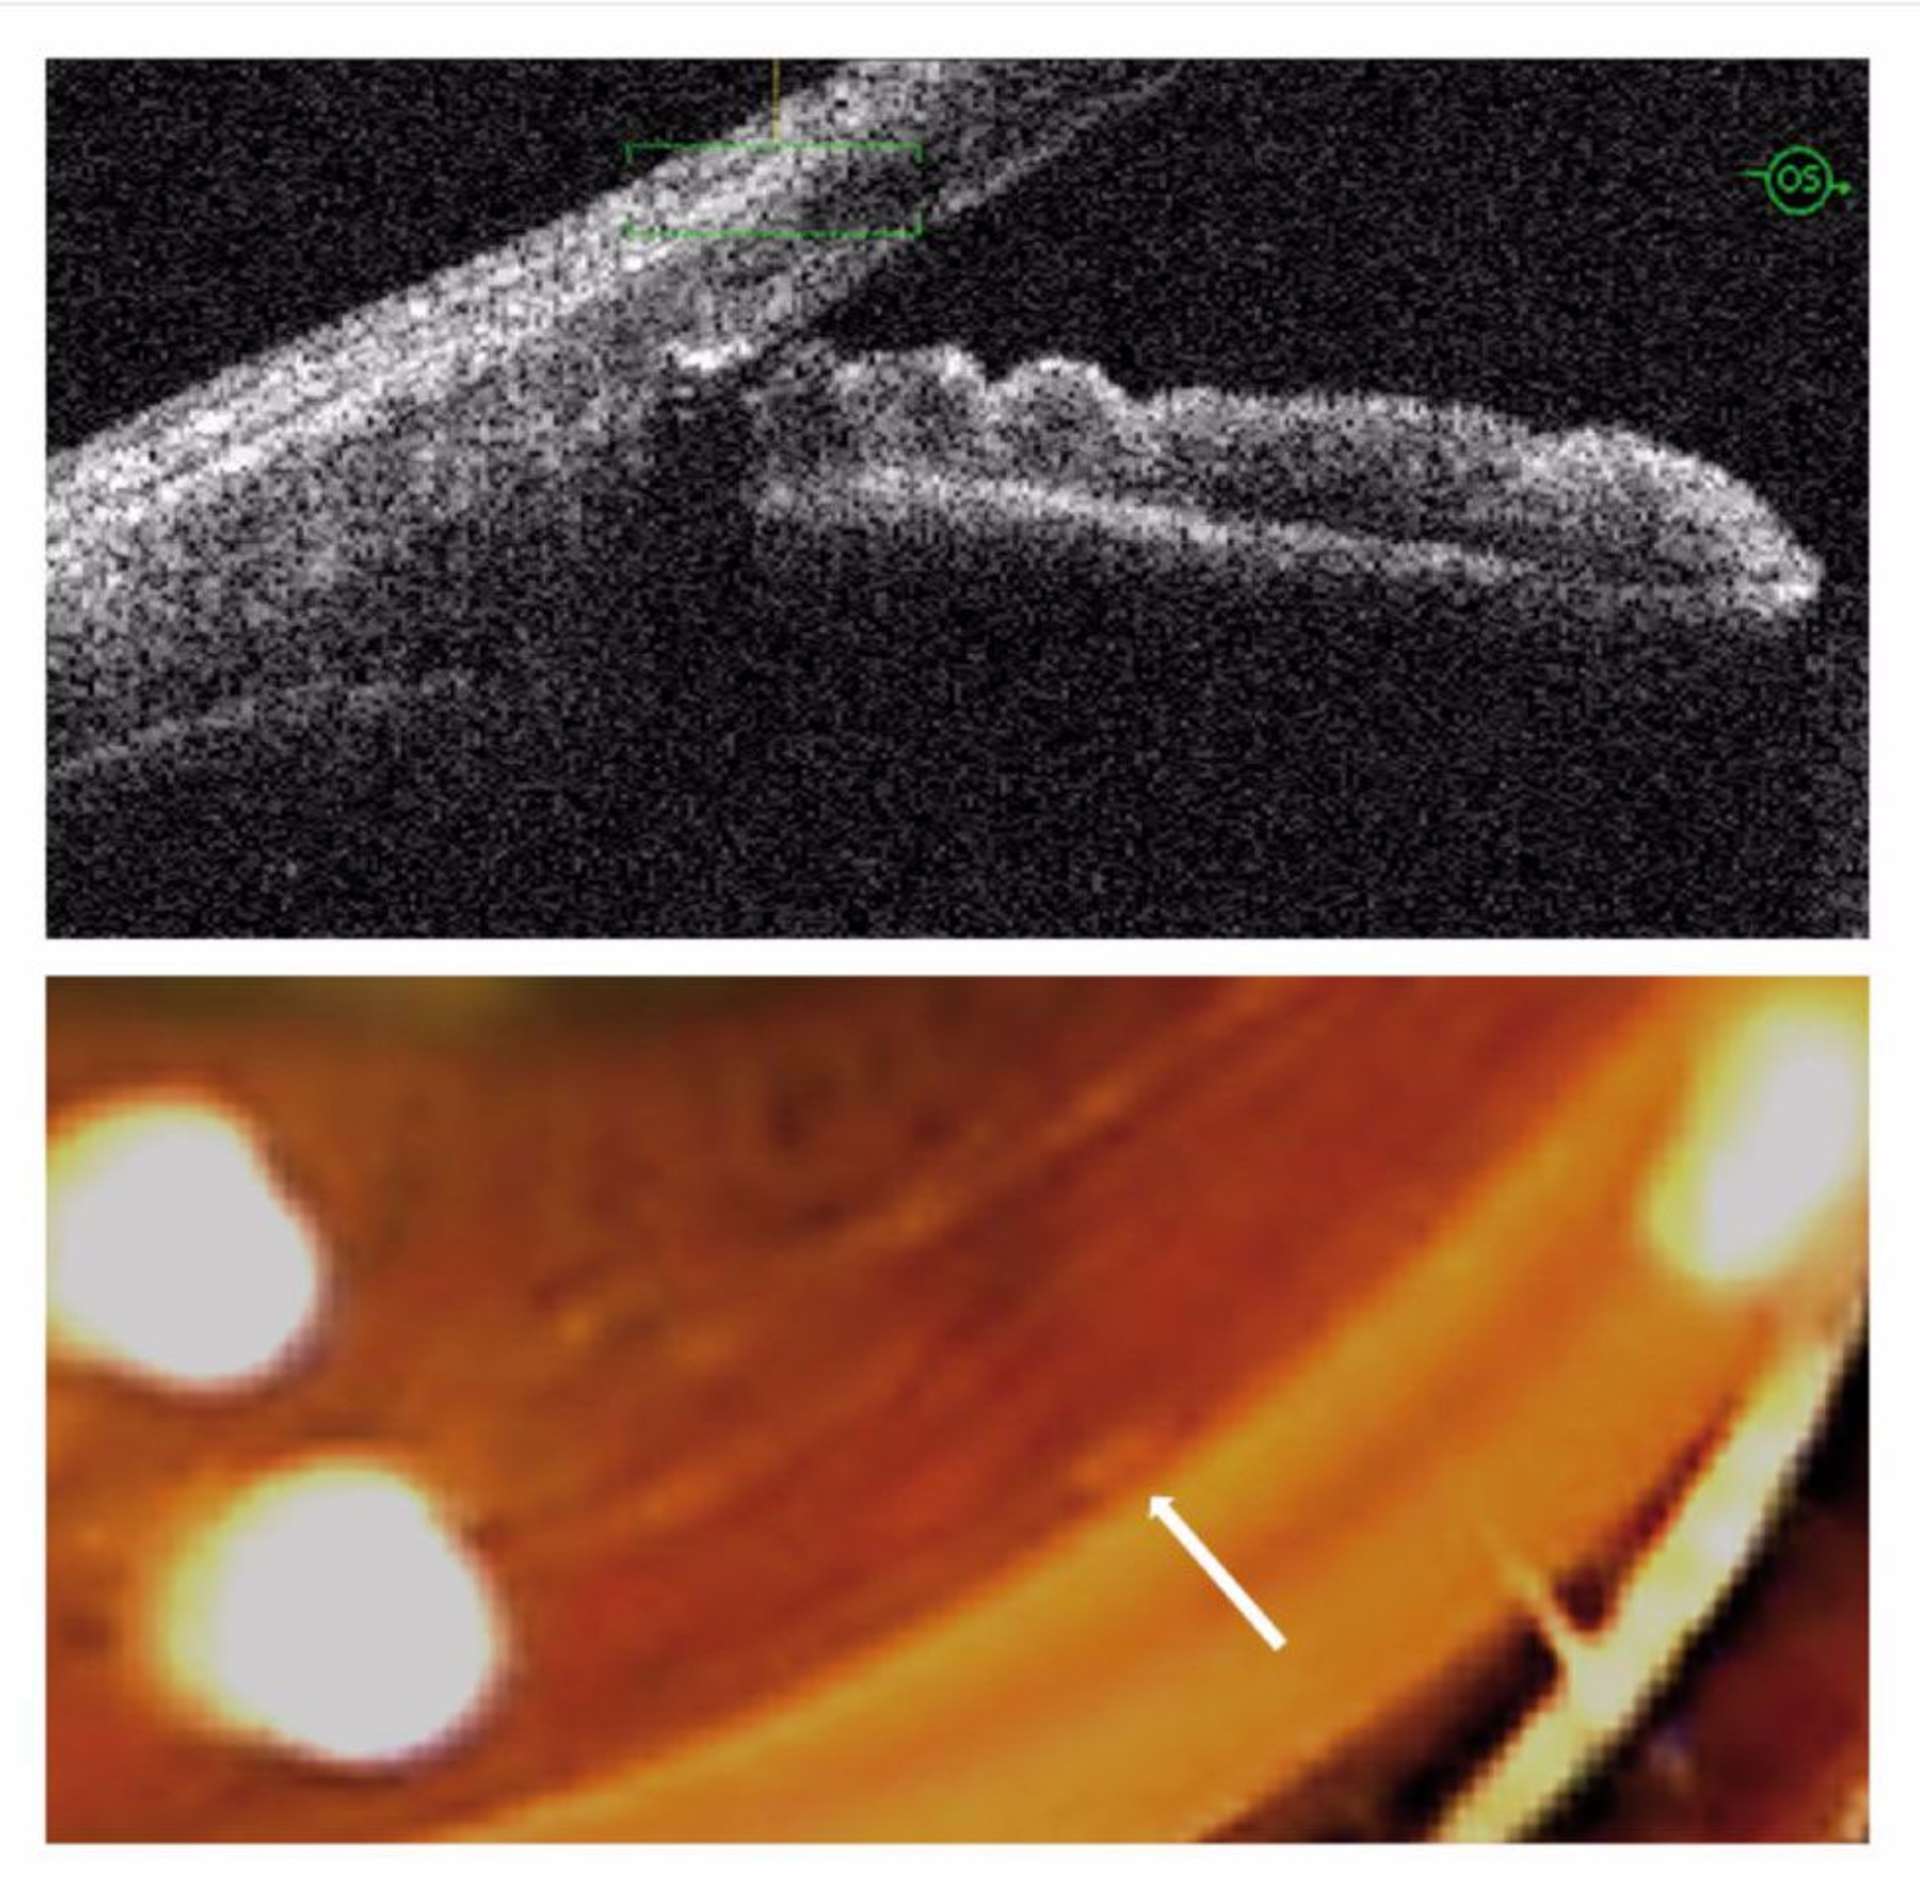 Figure 9. Coupes réalisées chez un patient ayant bénéficié de la pose d’un implant trabéculaire (iStent), qui apparaît hyperréflectif et s’accompagne d’un cône d’ombre postérieur. Noter la faible visibilité de l’implant lors de l’examen gonioscopique (flèche blanche). 
